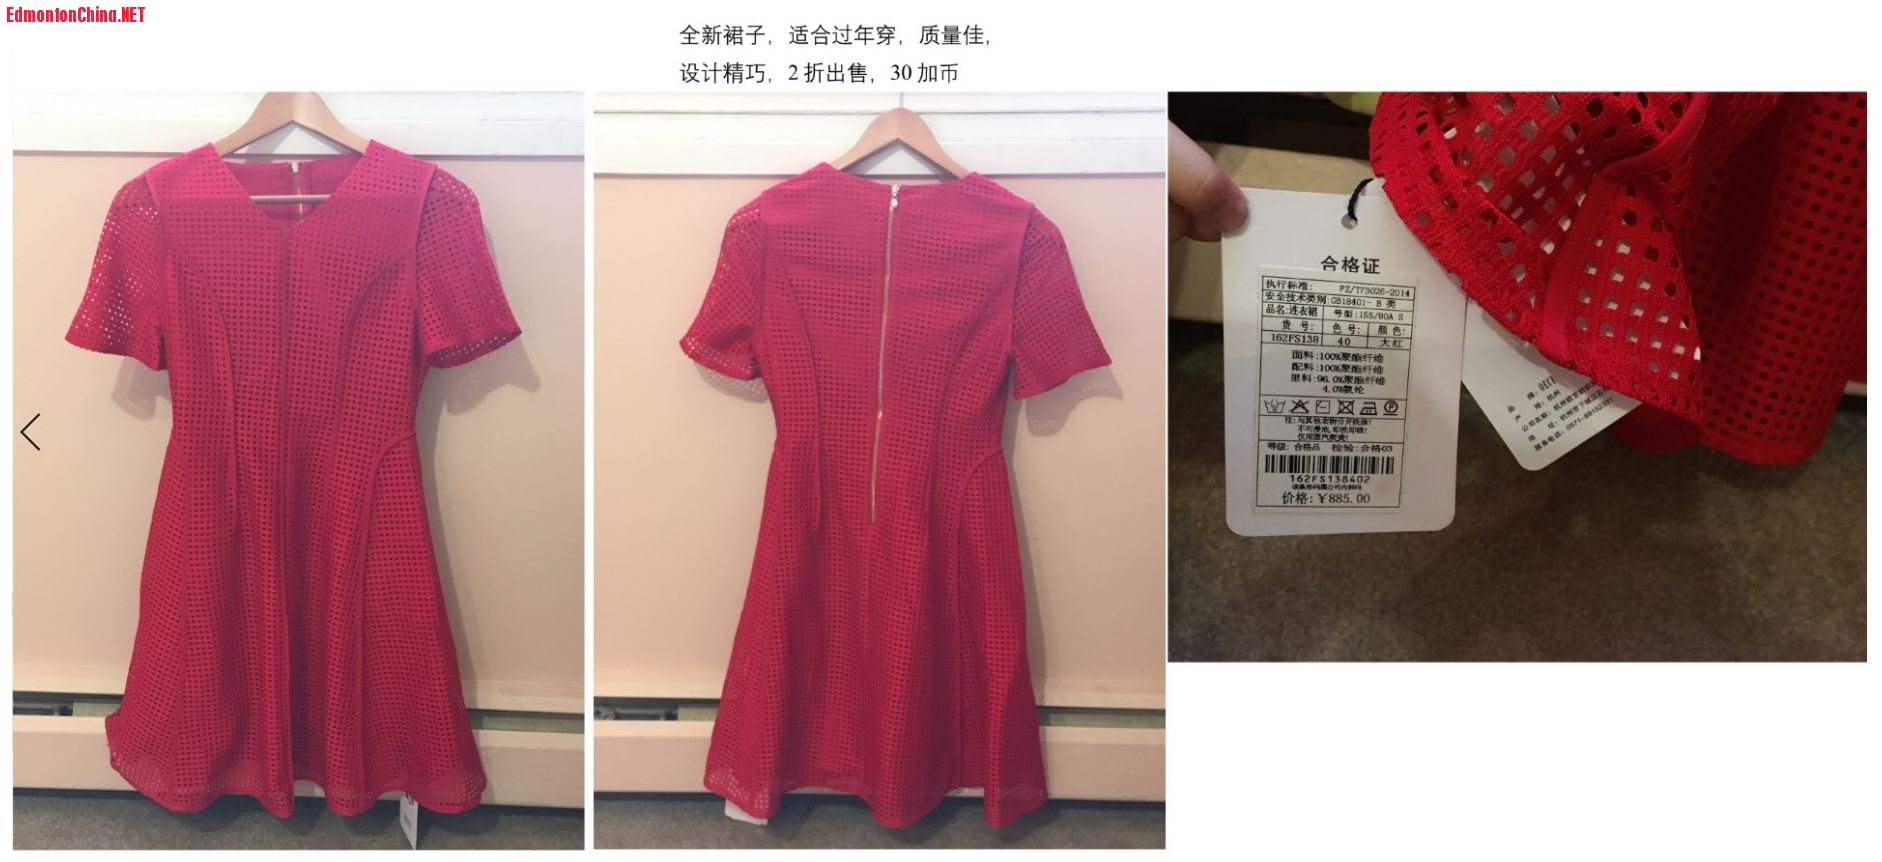 3. Red skirt.JPG